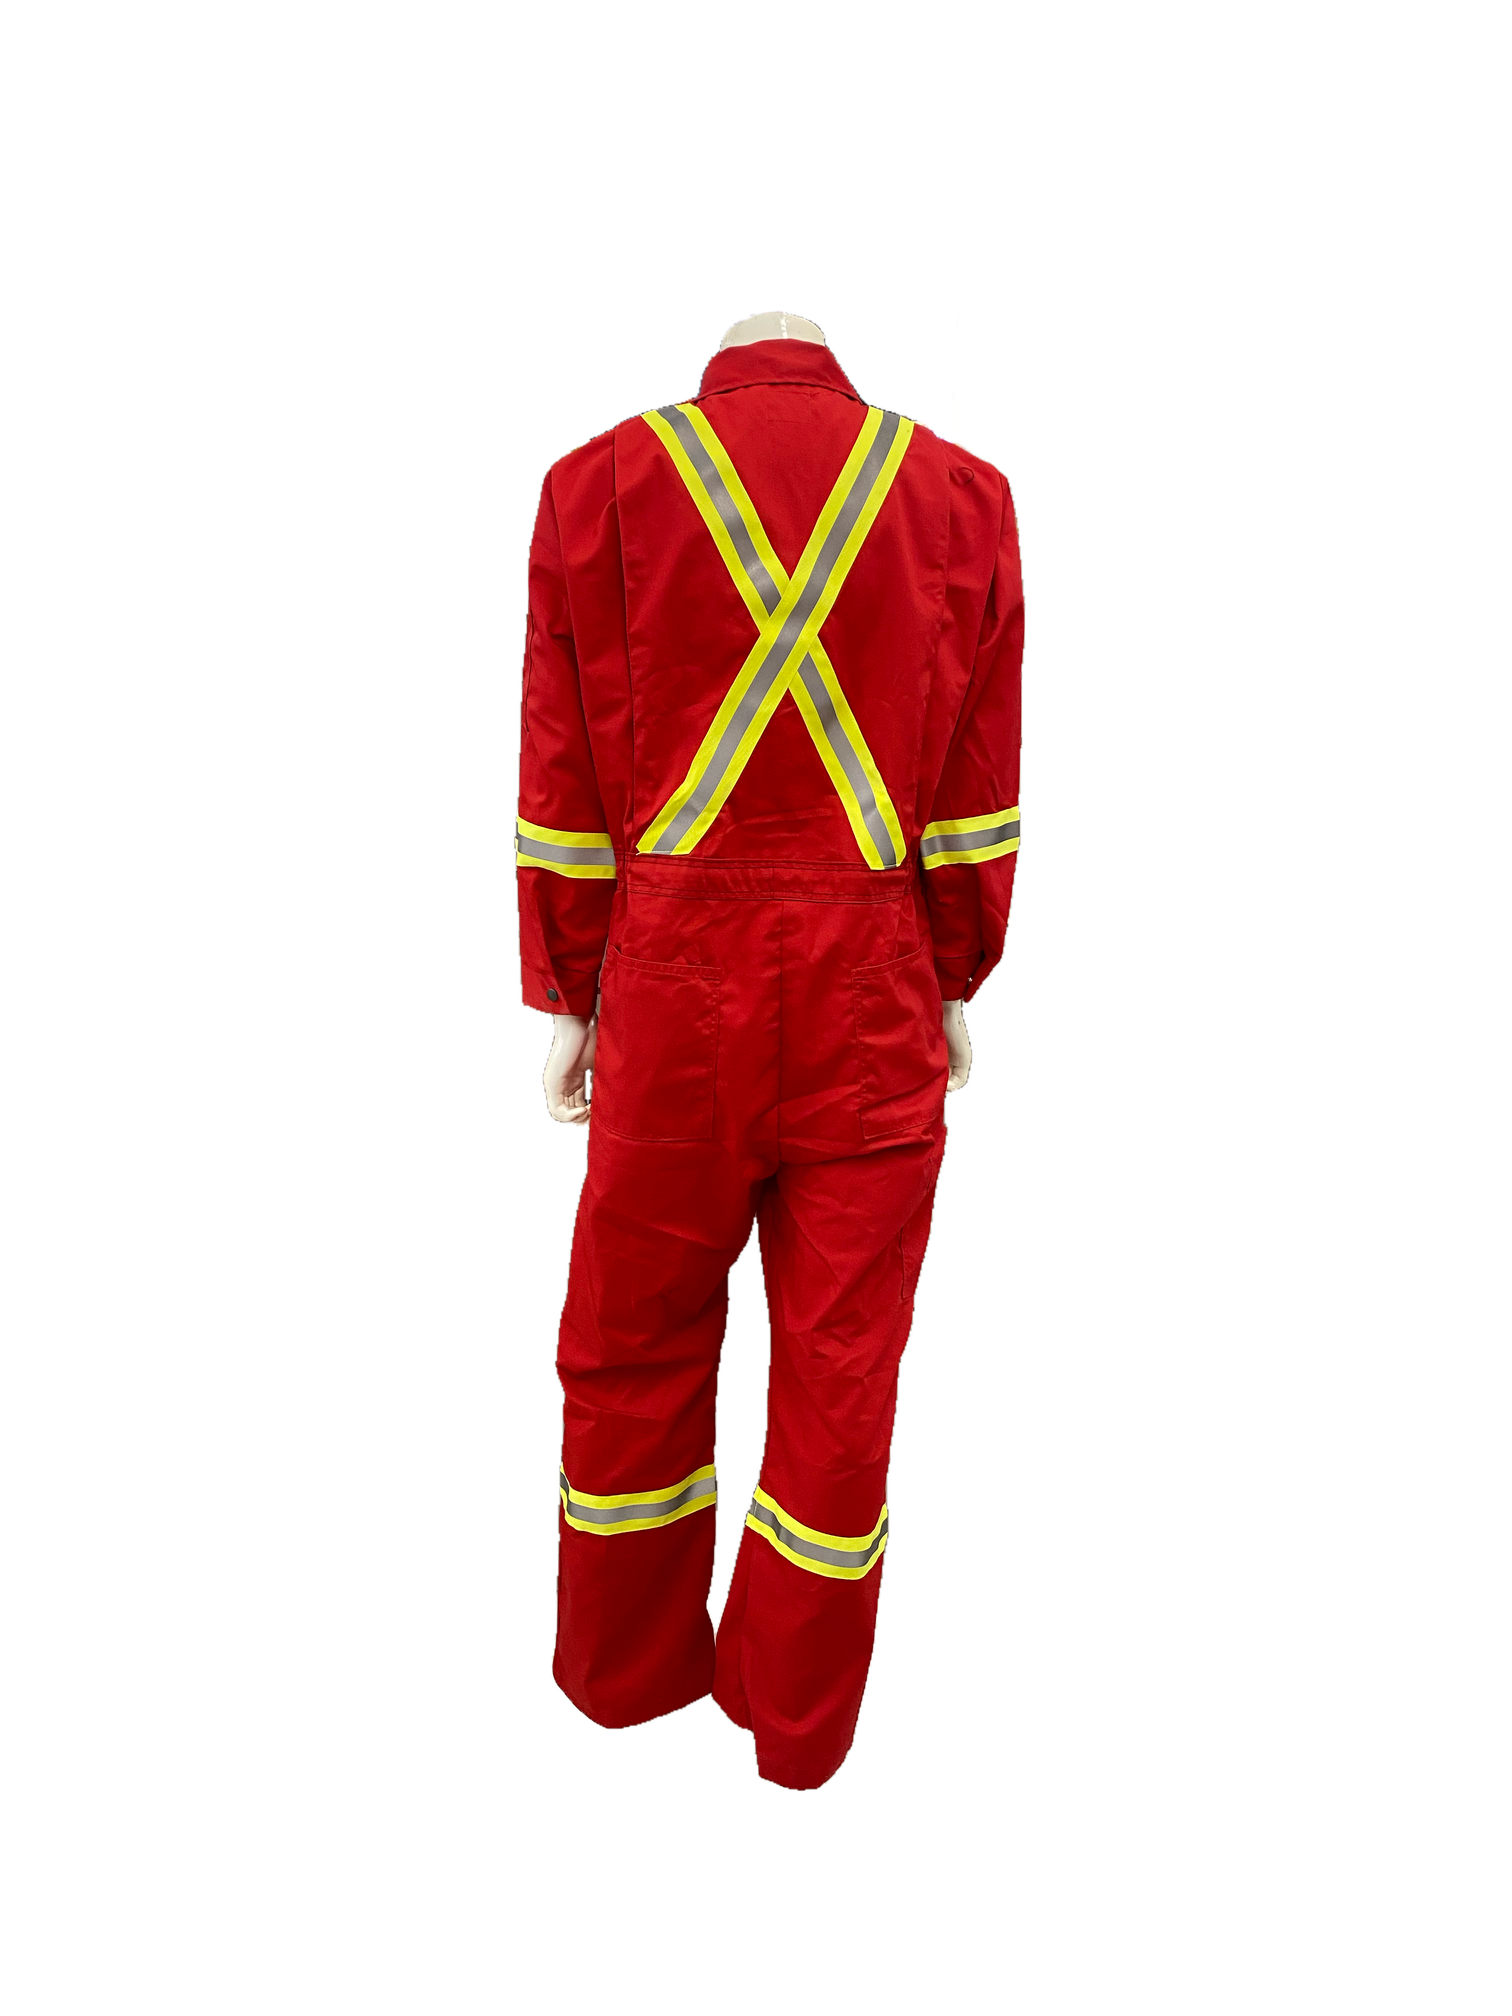 Wildrose Garments Red Striped P/C Coveralls | ruggednorth.ca